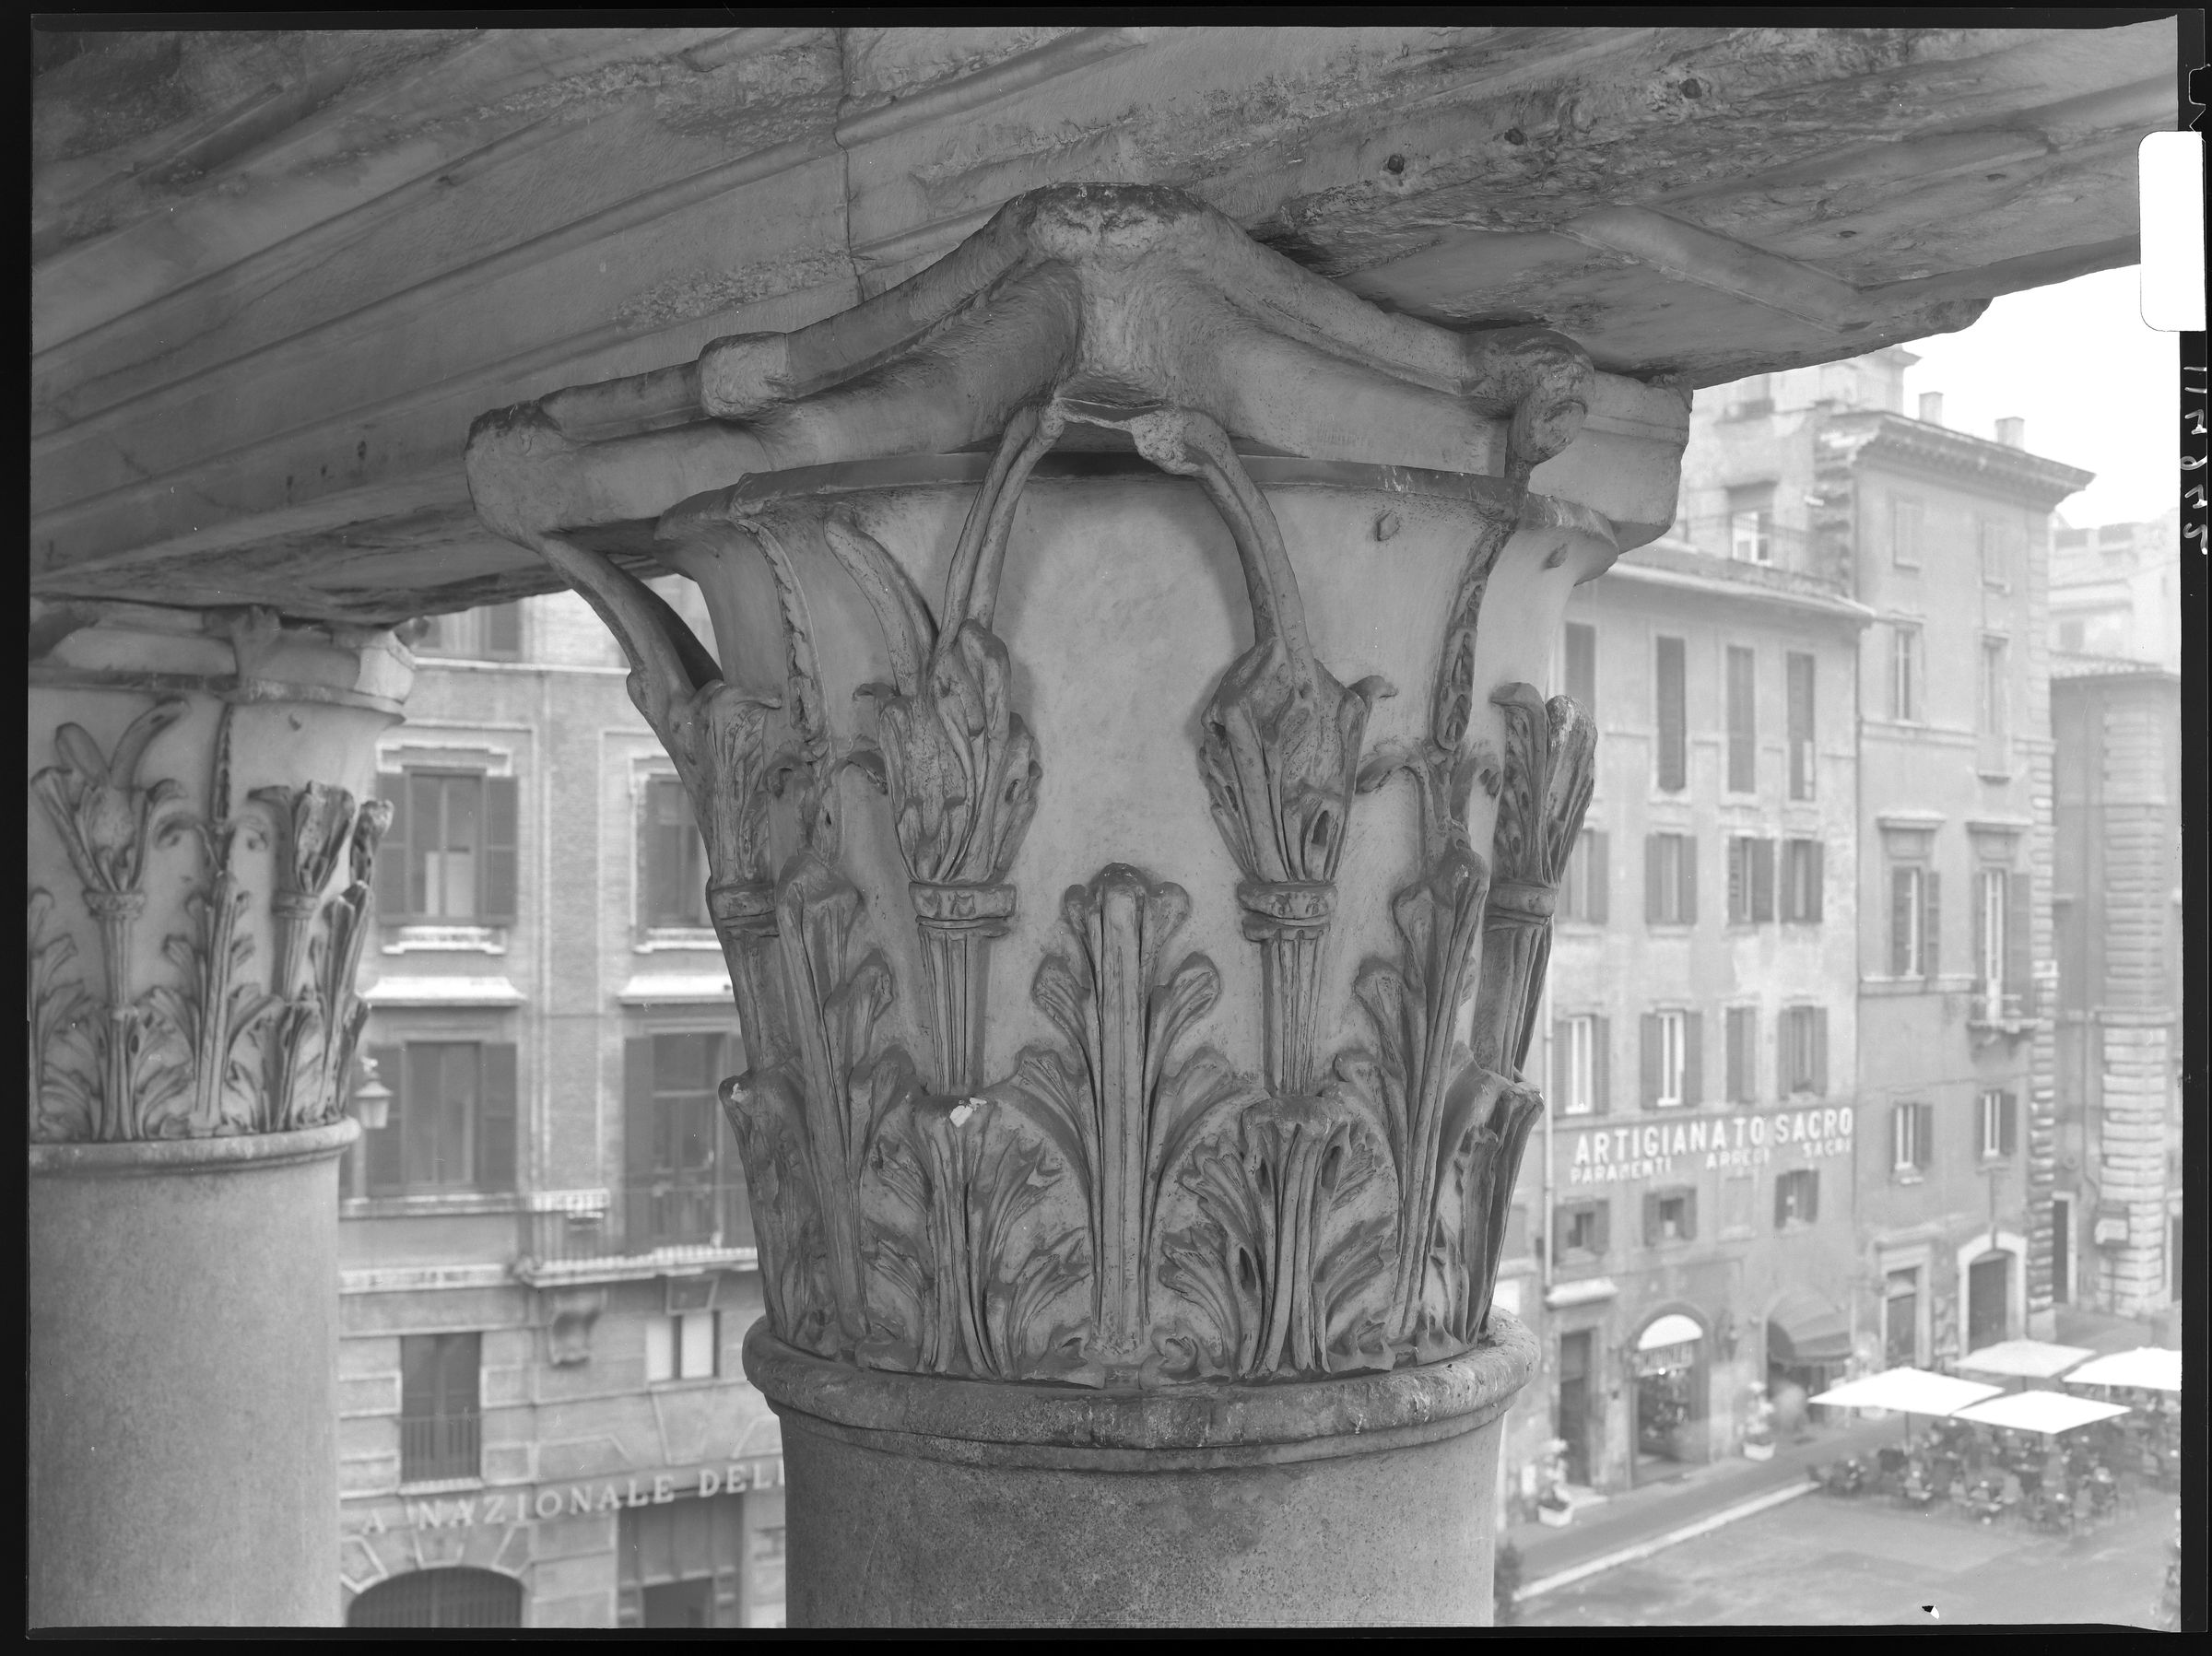 Fotografo non identificato, Roma - Pantheon,1951-2000, 18x24 cm, E114942